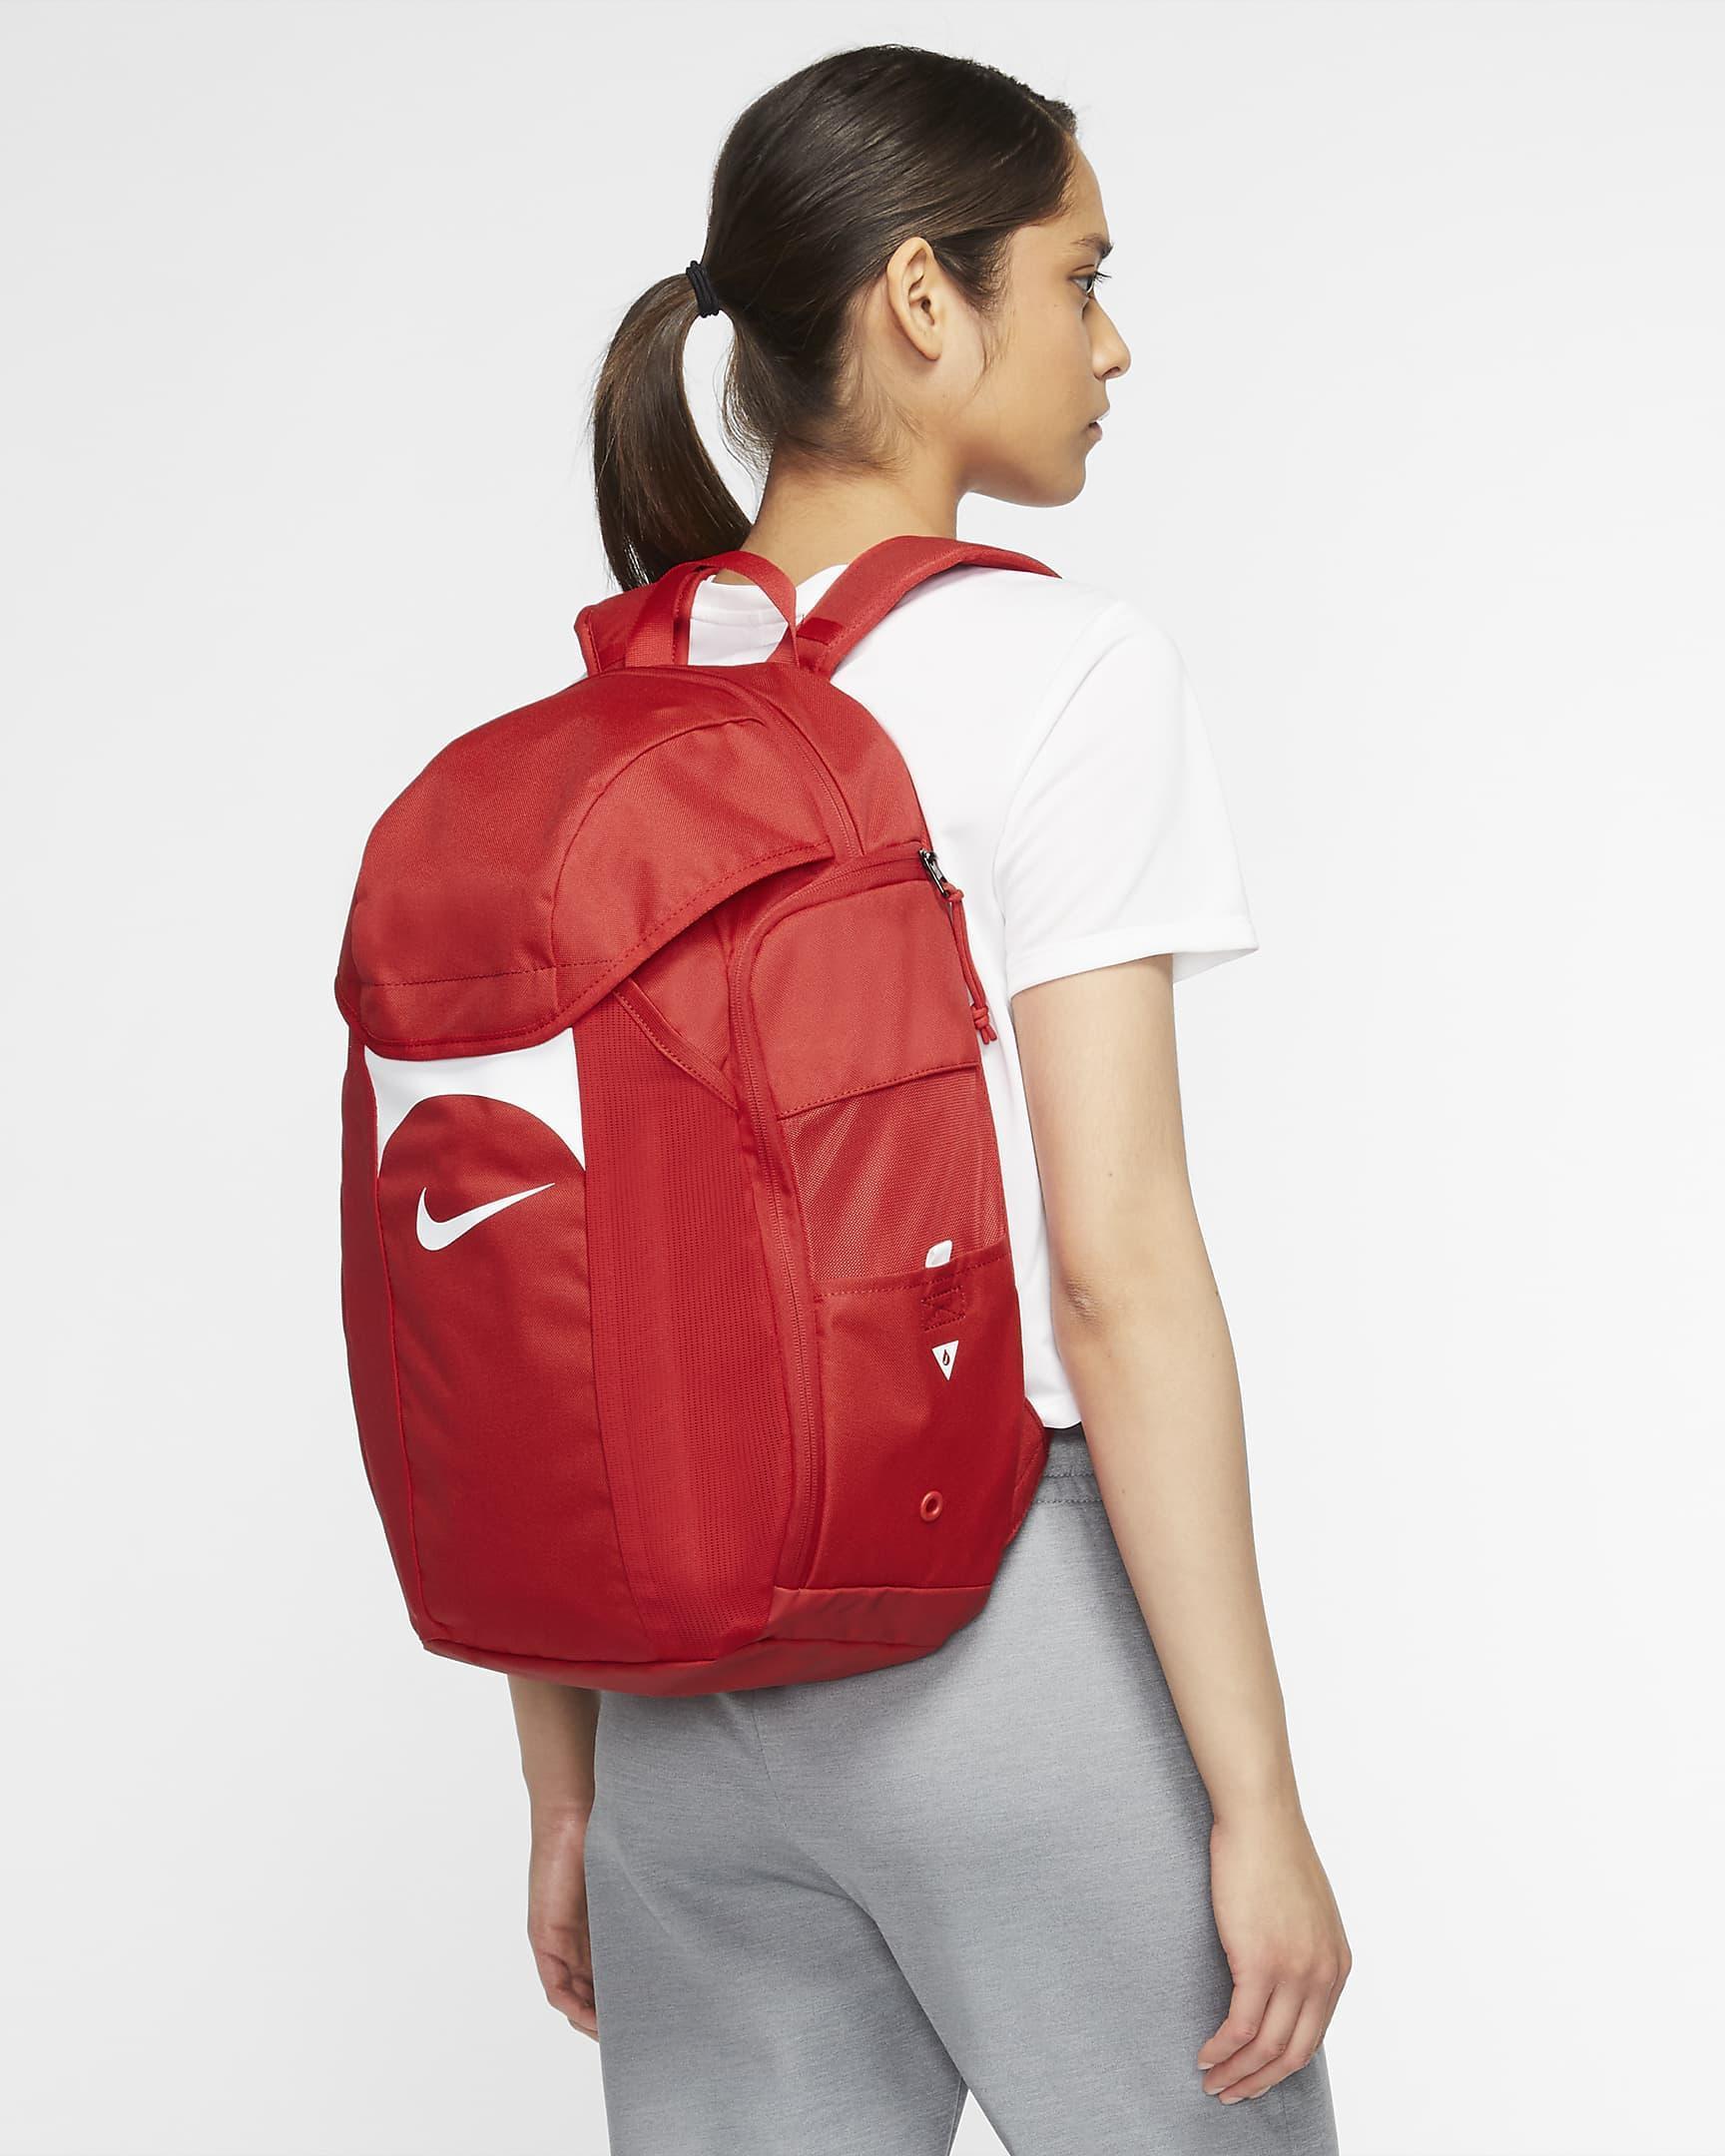 Zaino Nike Team backpack rosso 30L